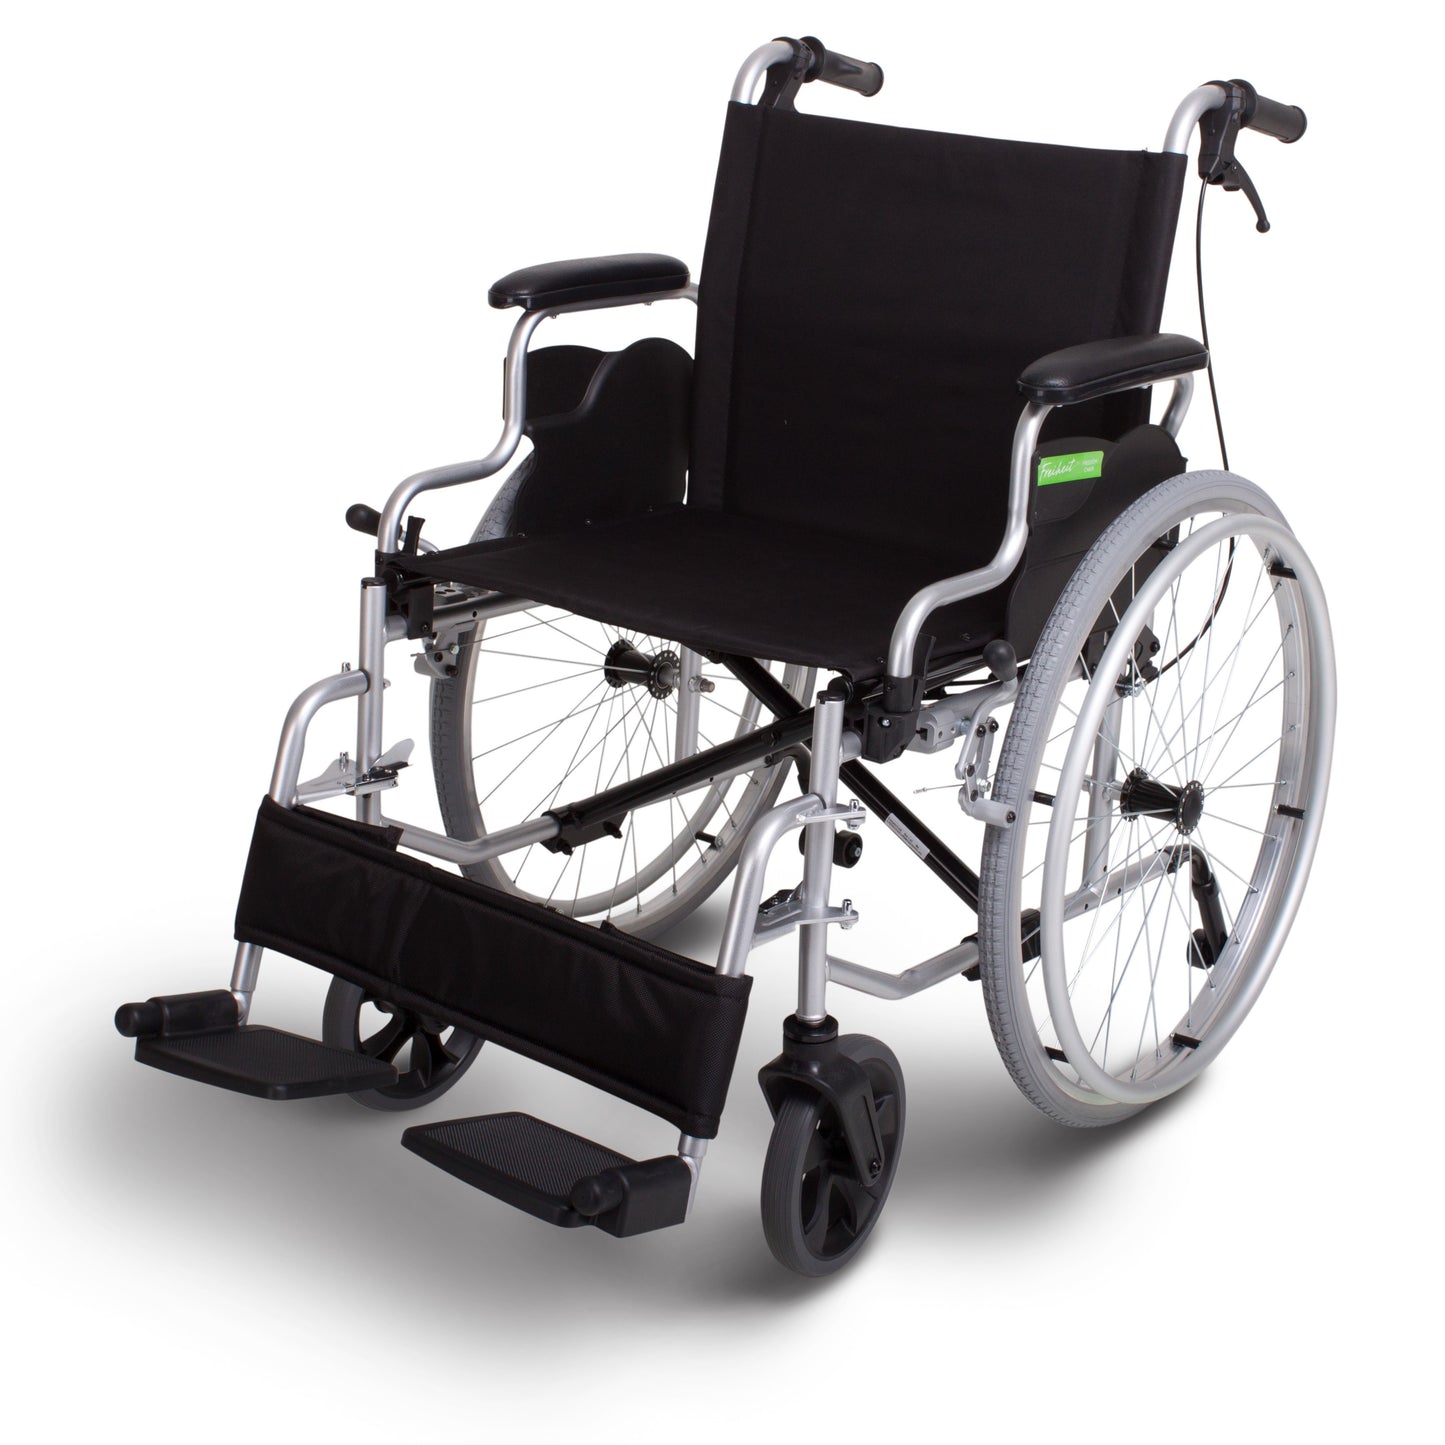 Freiheit Freedom Lightweight Manual Wheelchair 18"